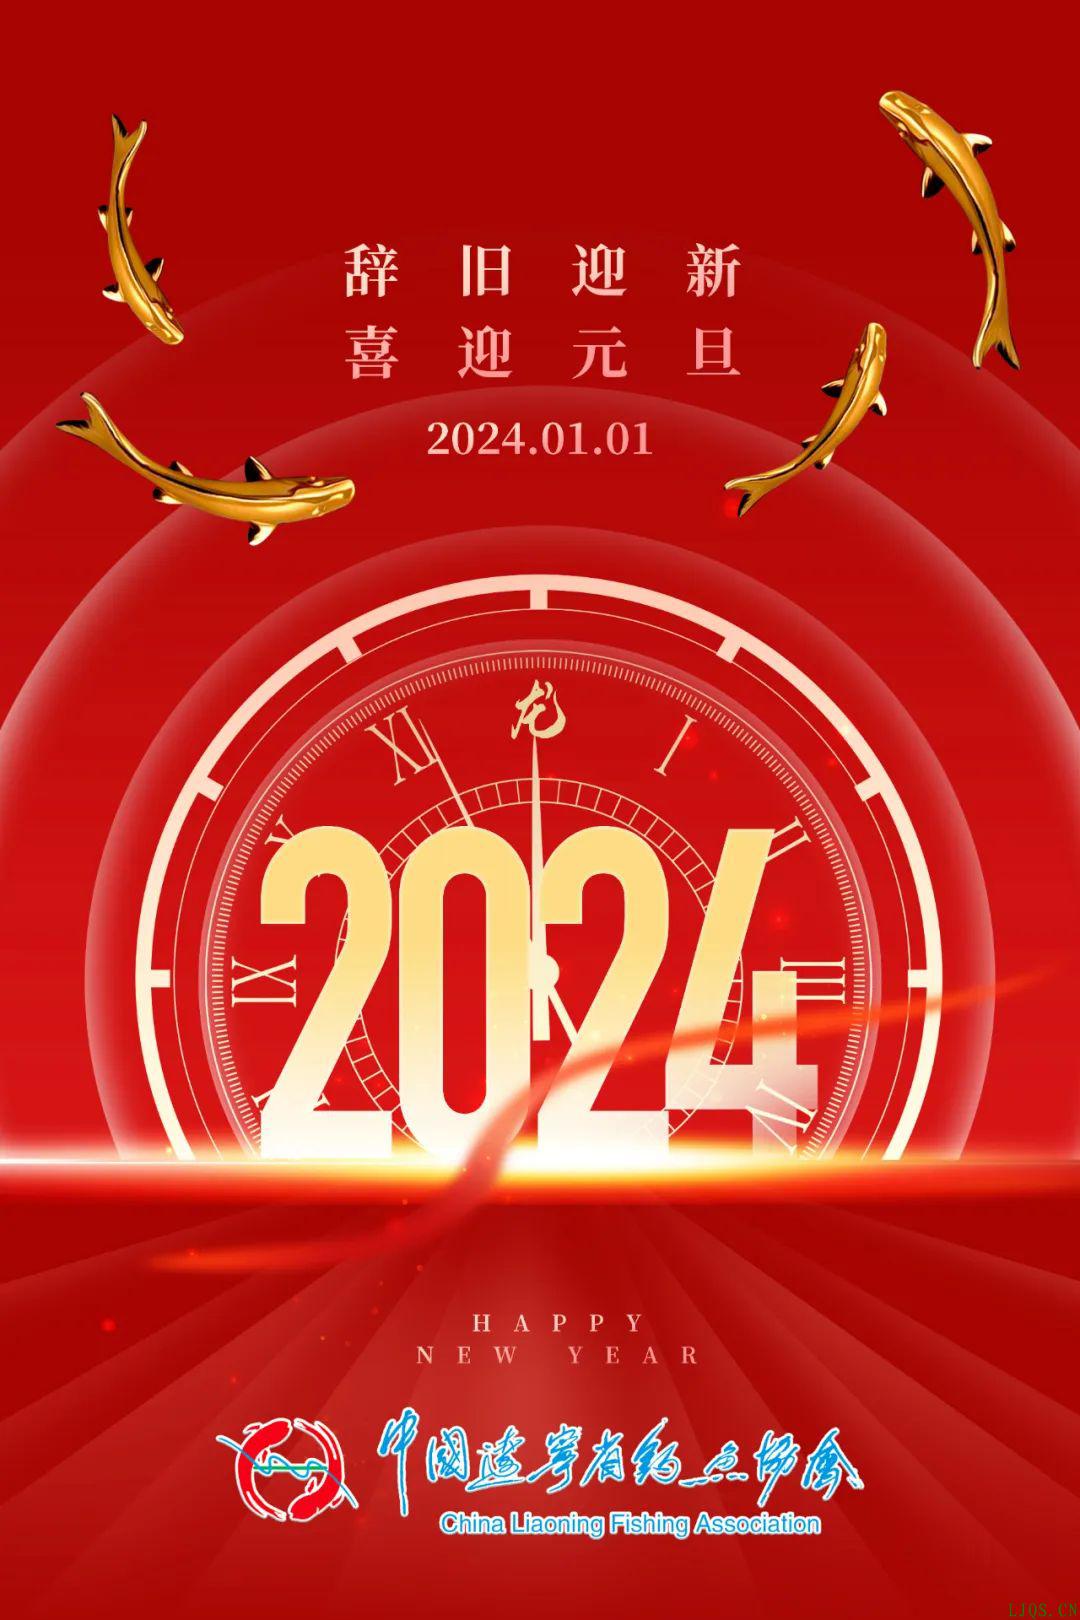 辽宁省钓鱼协会祝广大会员和钓友们：2024新年快乐！鱼跃龙门，好运连连！